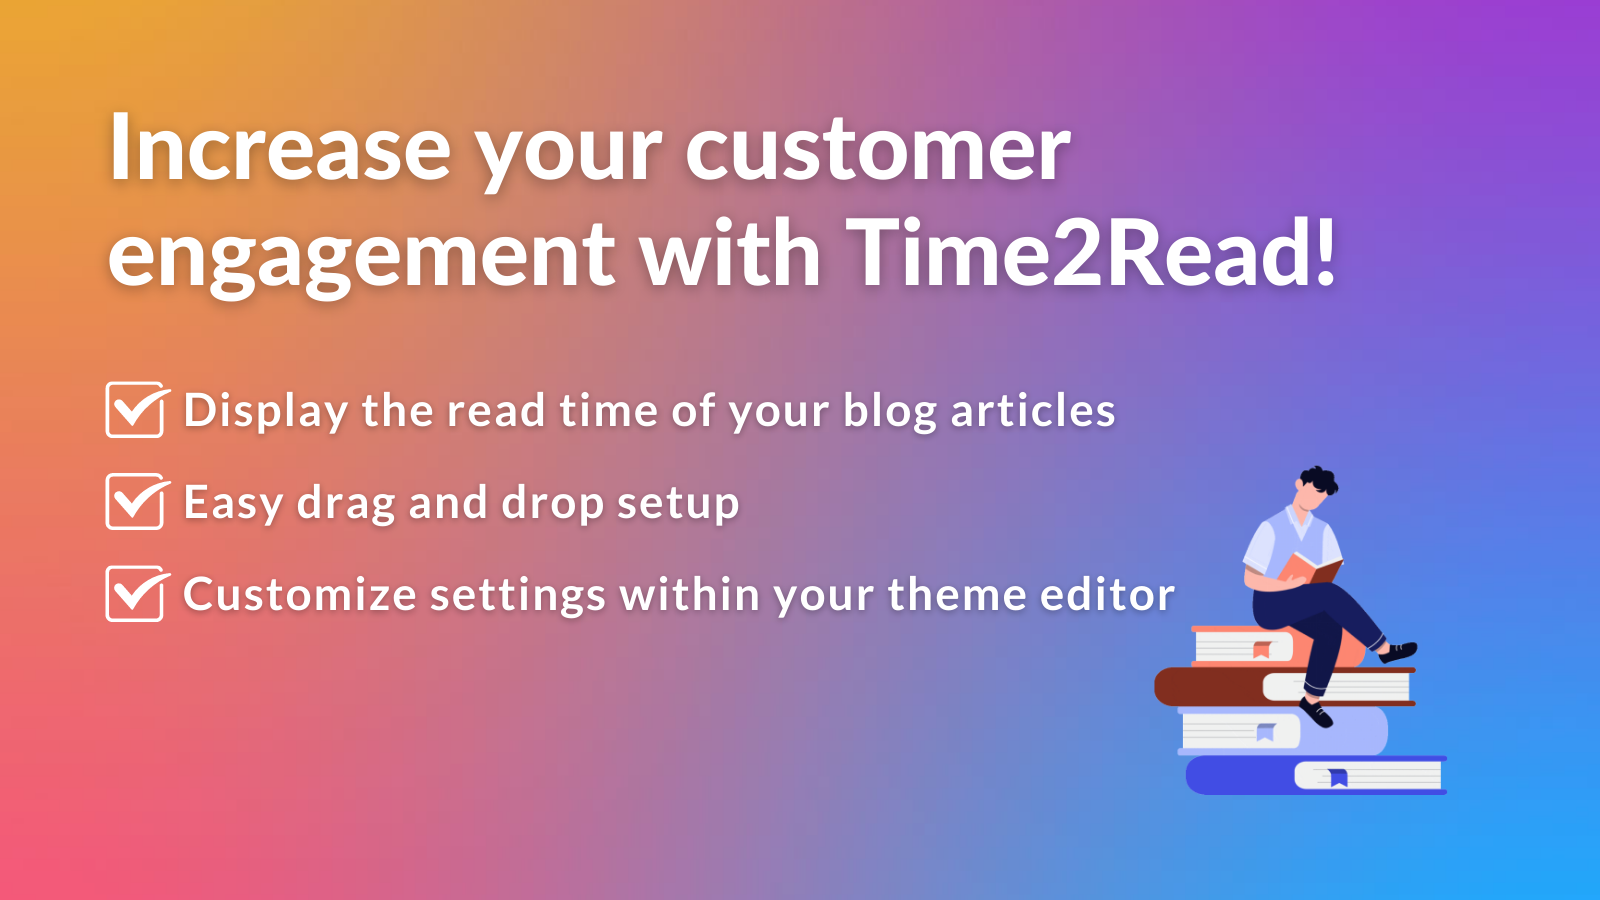 Öka ditt kundengagemang med Time2Read!